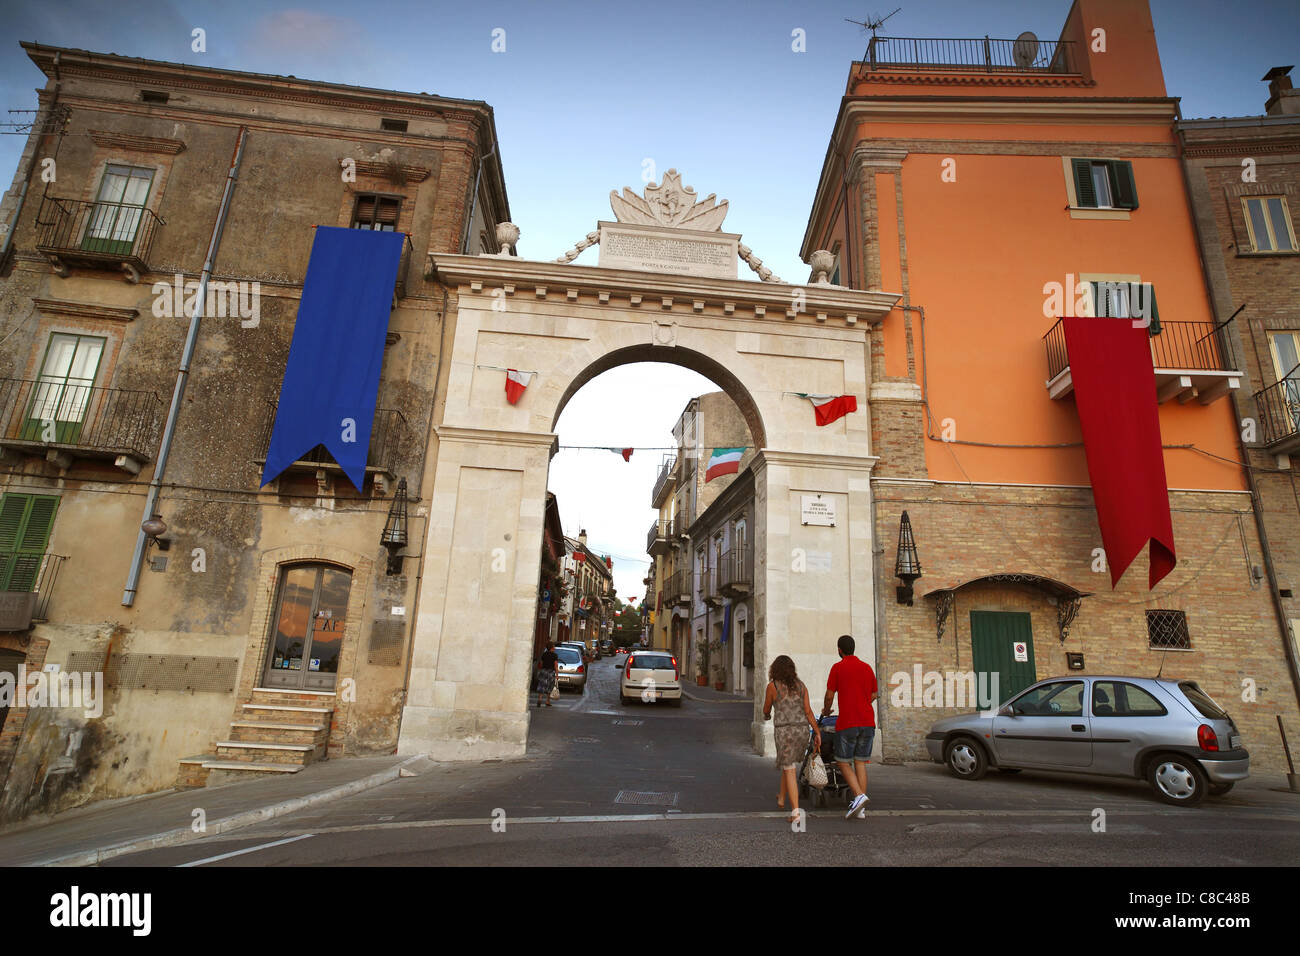 L'entrée de la ville de Guardiagrele dans les Abruzzes, en Italie. Banque D'Images